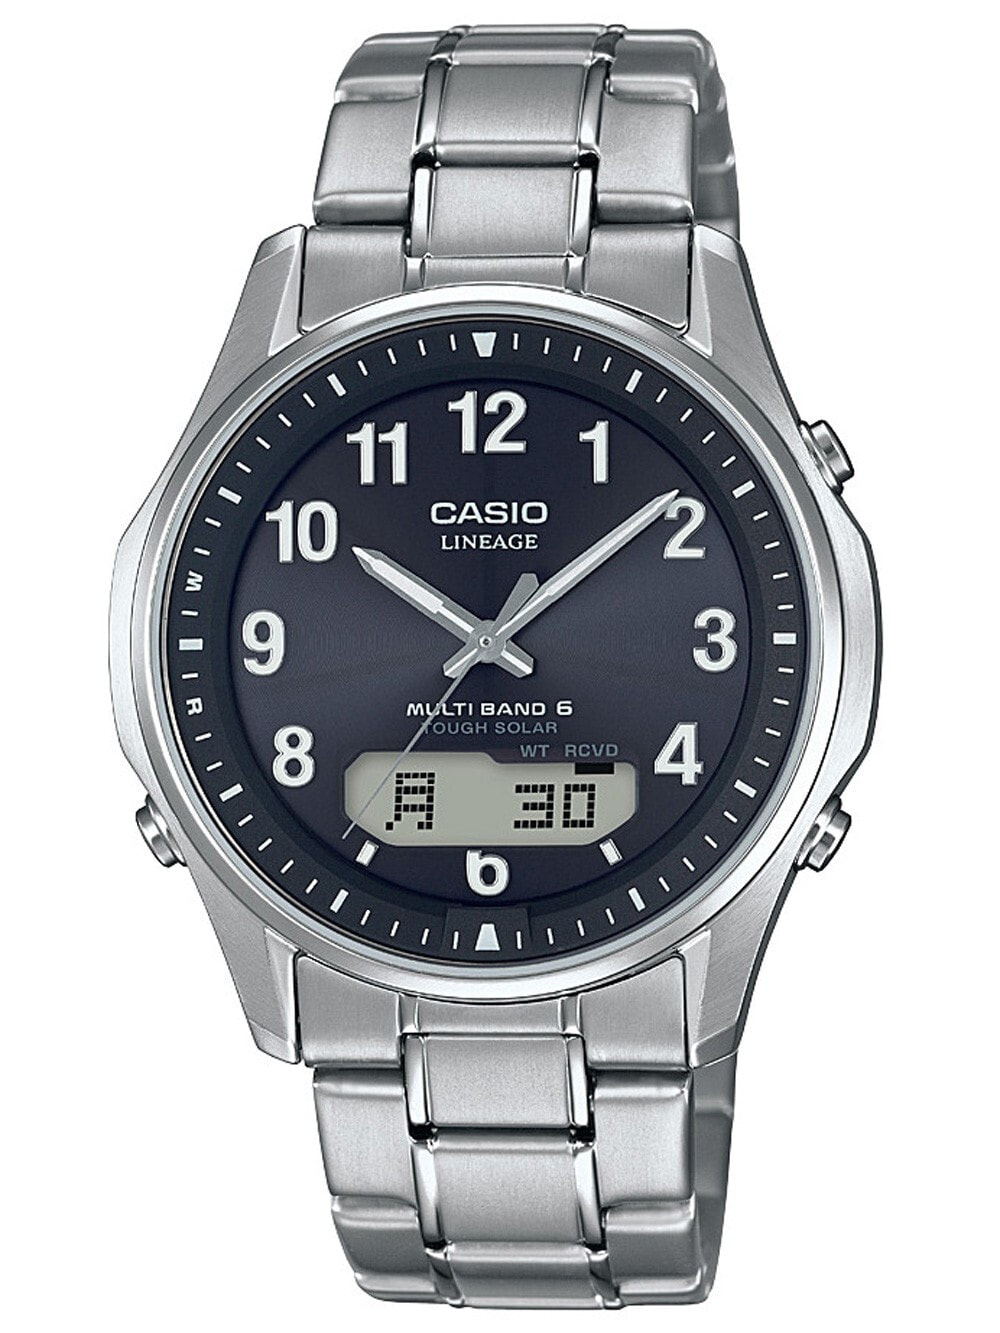 Мужские наручные часы с серебряным браслетом Casio LCW-M100TSE-1A2ER Wave Ceptor 40mm 5ATM